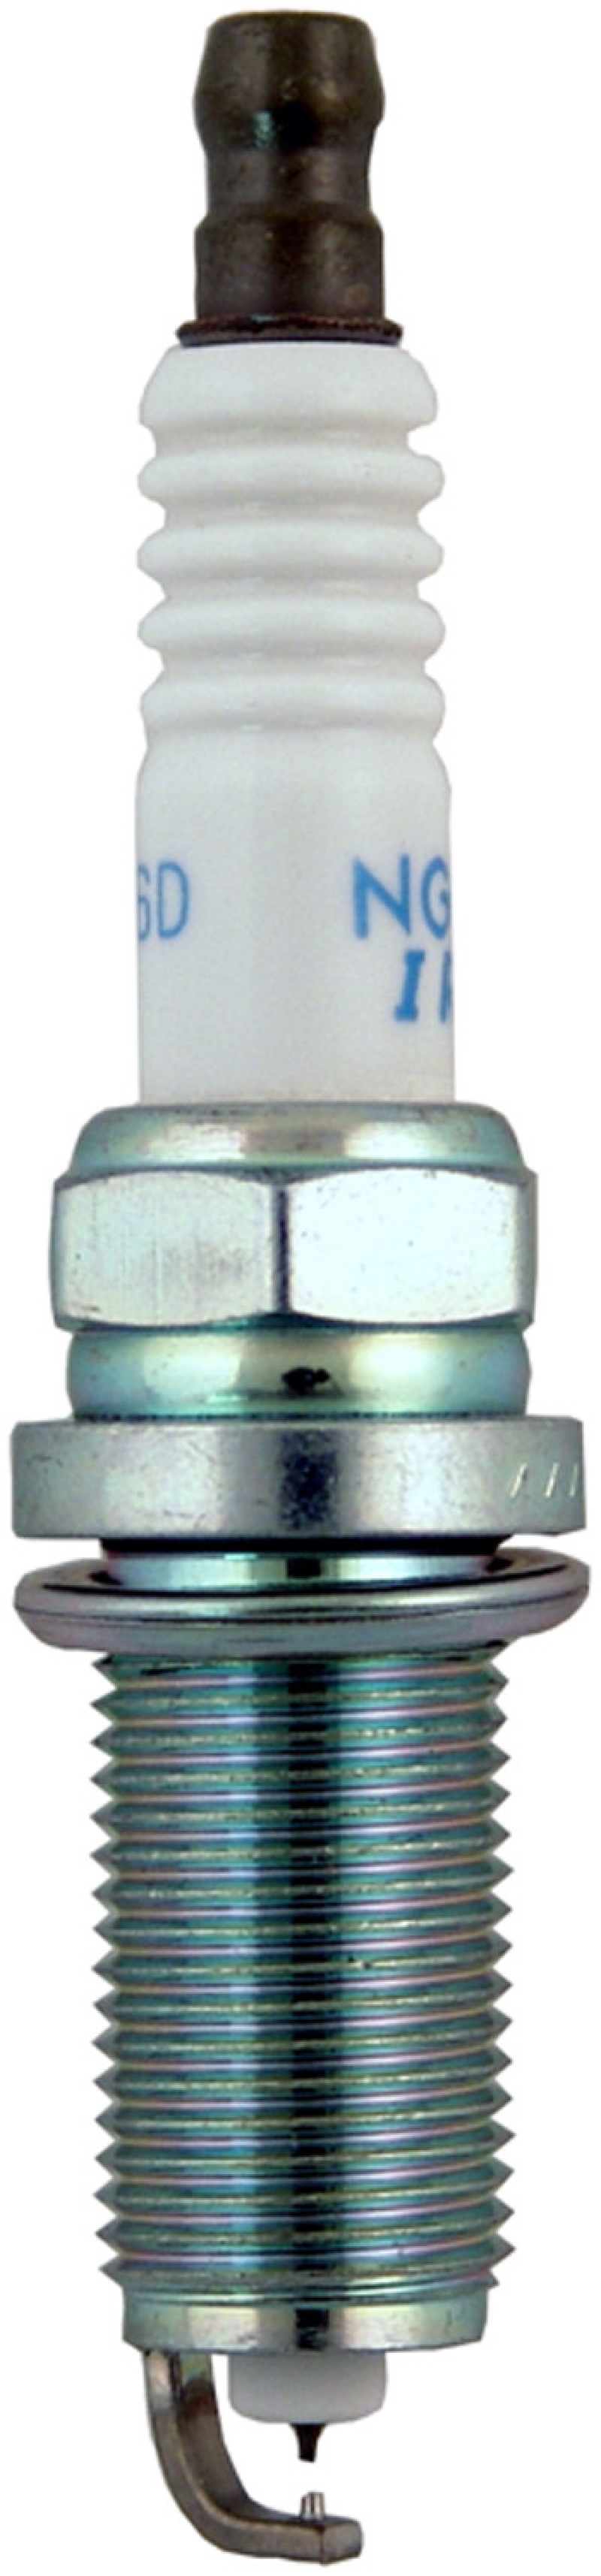 NGK Iridium/Platinum Spark Plug Box of 4 (DILFR6D11) - 6176